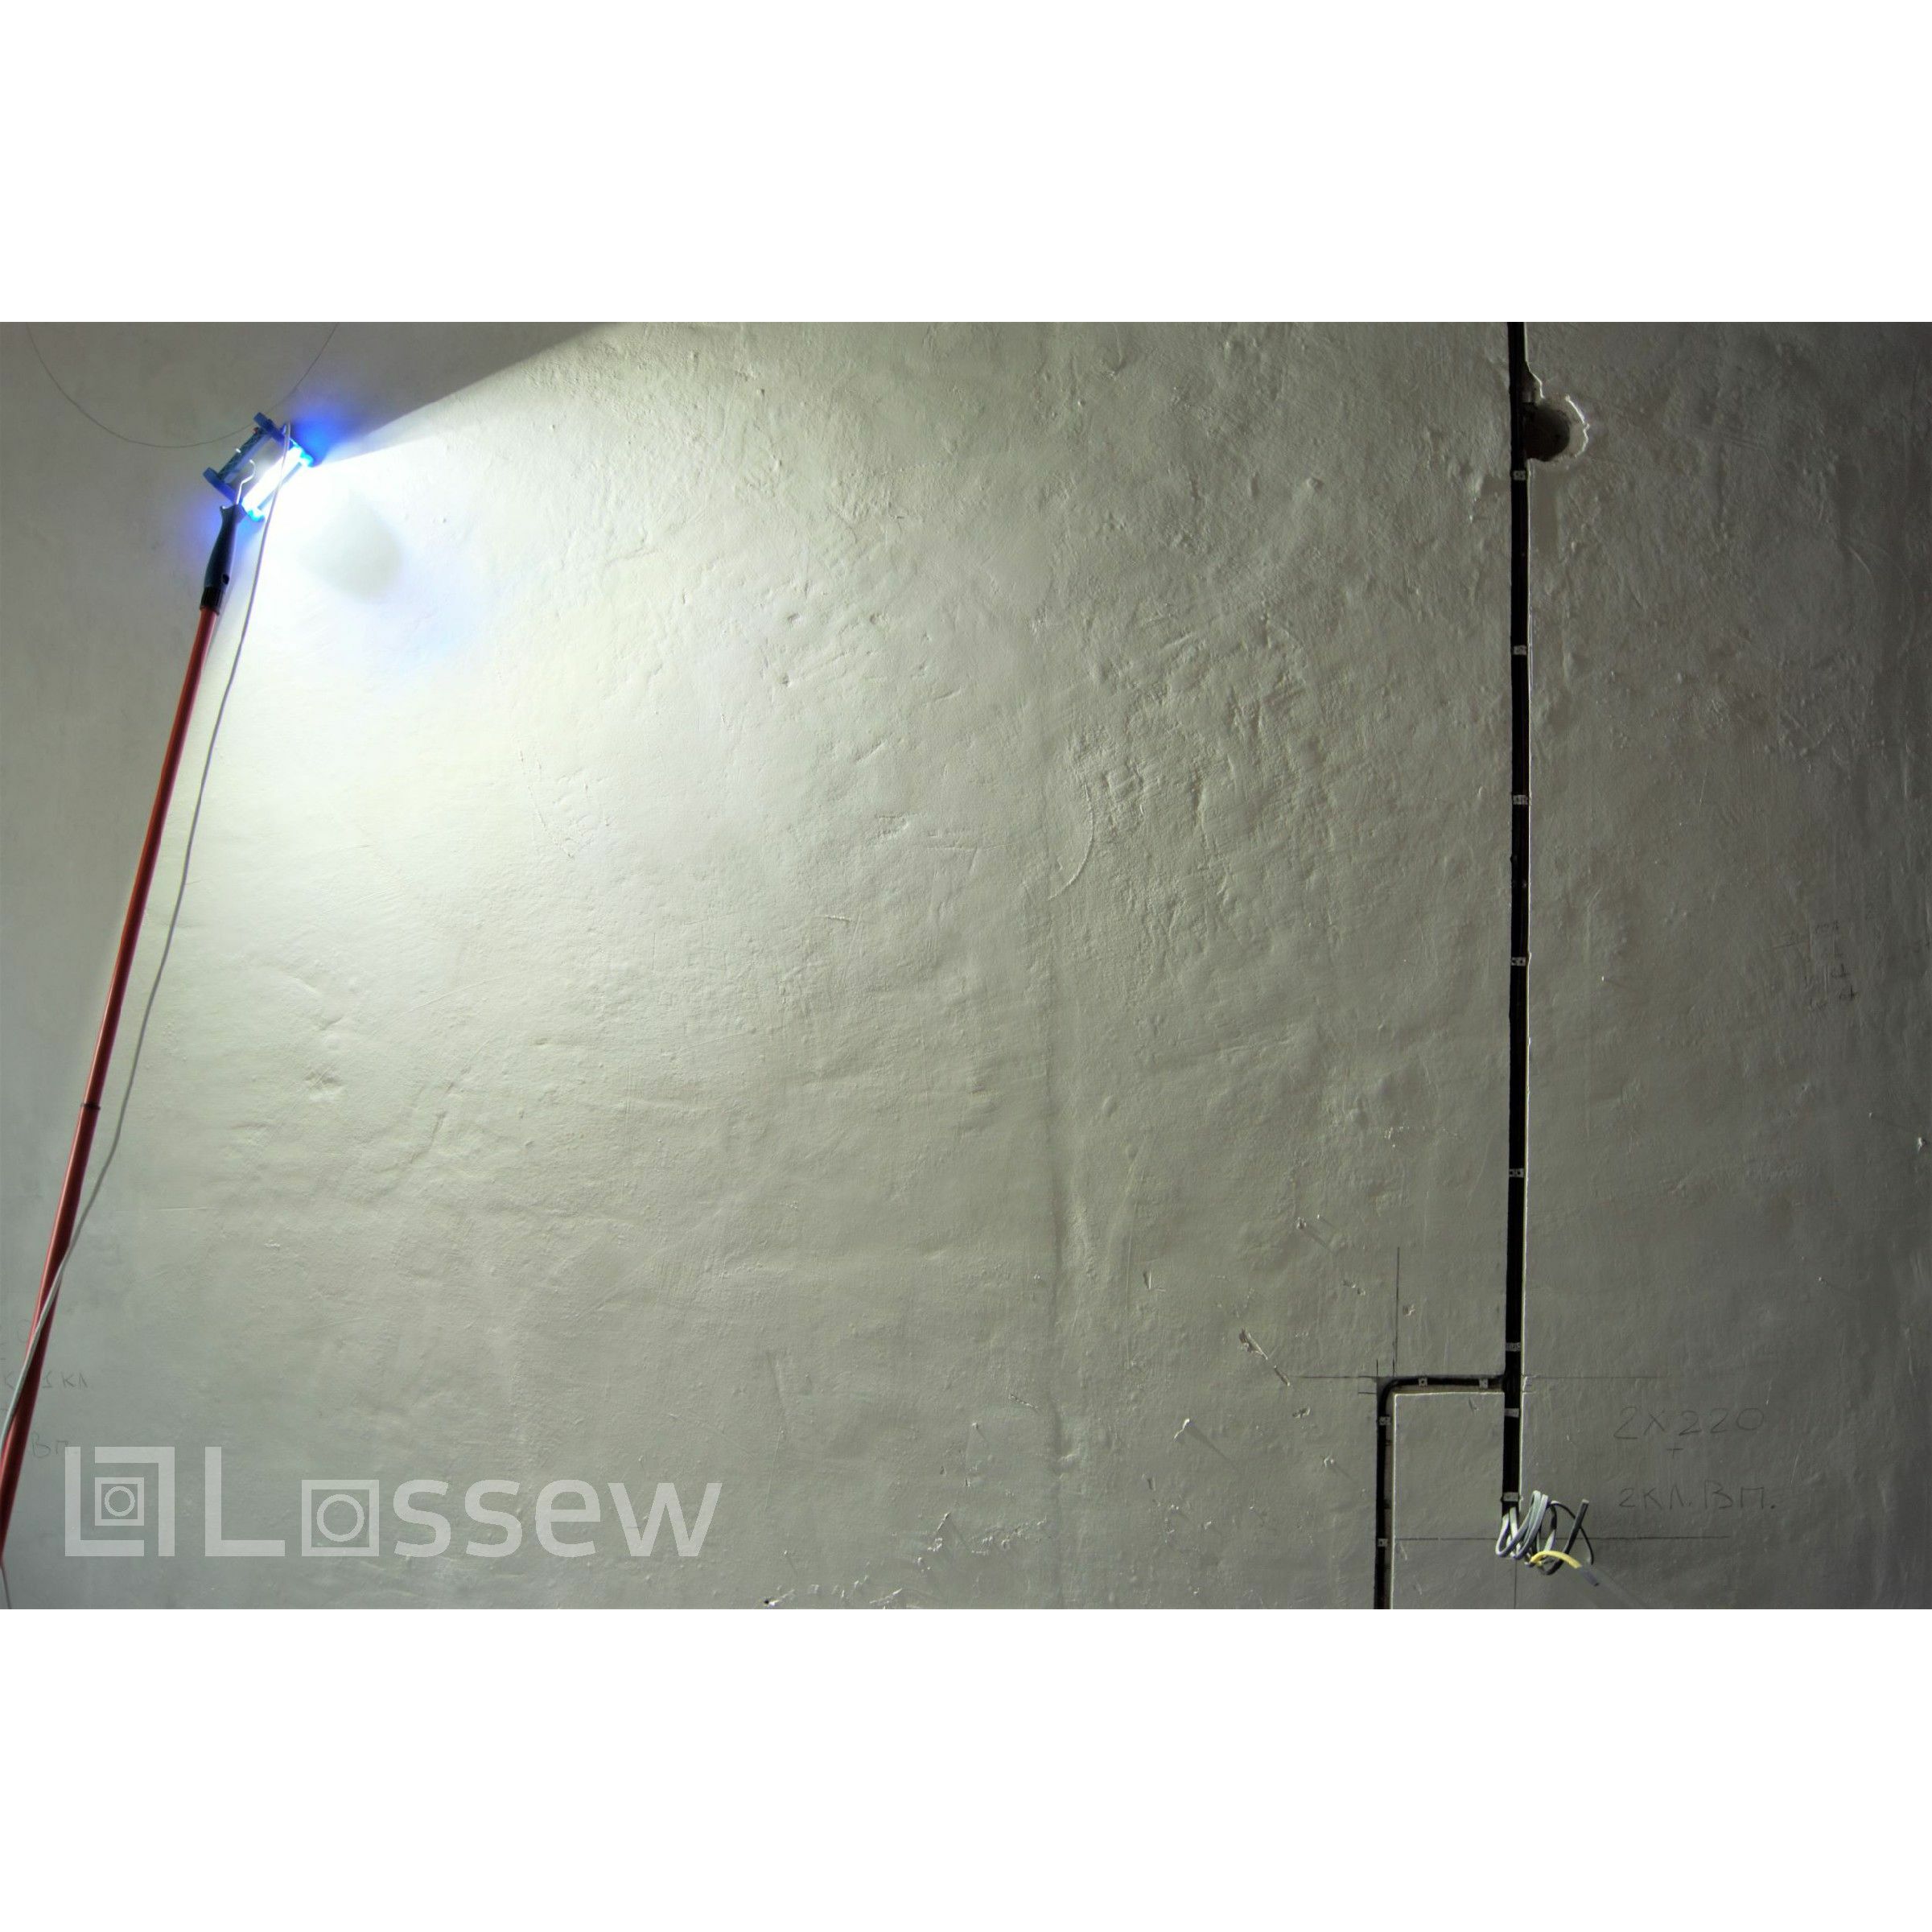 Проявочный свет купить. Проявочная лампа маляра LOSSEW. Малярный светильник LOSSEW Lamp p2 Ultra Pro. Проявочная лампа Лосева. Лампа маляра LOSSEW p2 Ultra Pro.